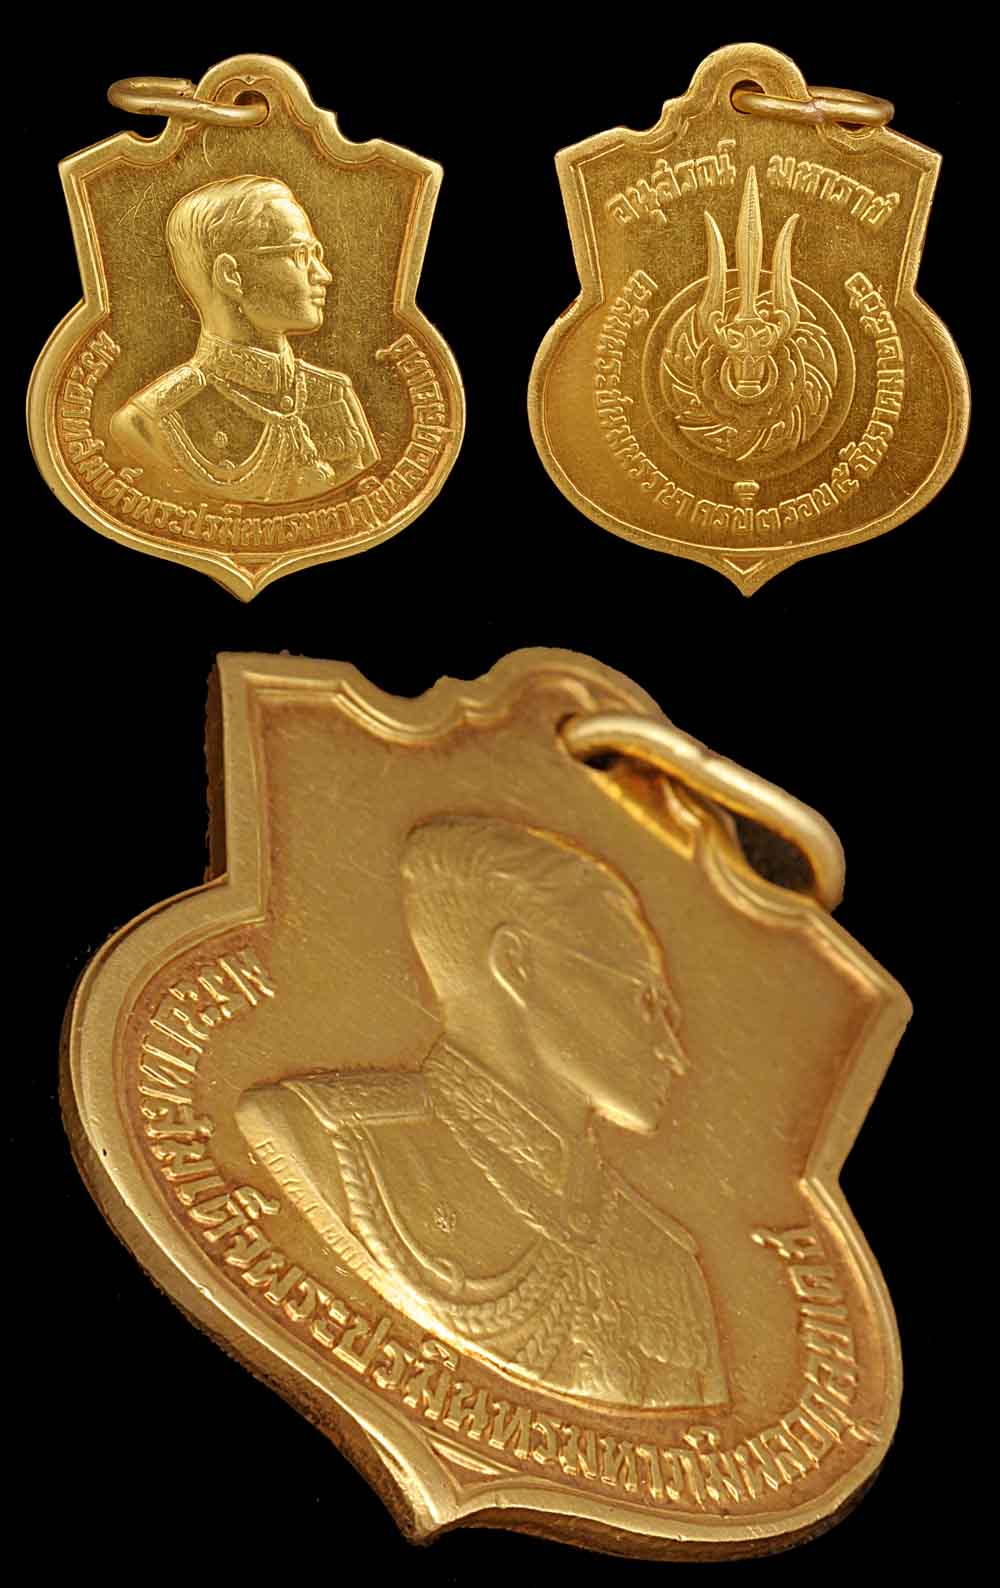 พระเครื่อง  เหรียญอนุสรณ์มหาราช เหรียญในหลวงครบ 3 รอบ ปี 2506 เนื้อทองคำ